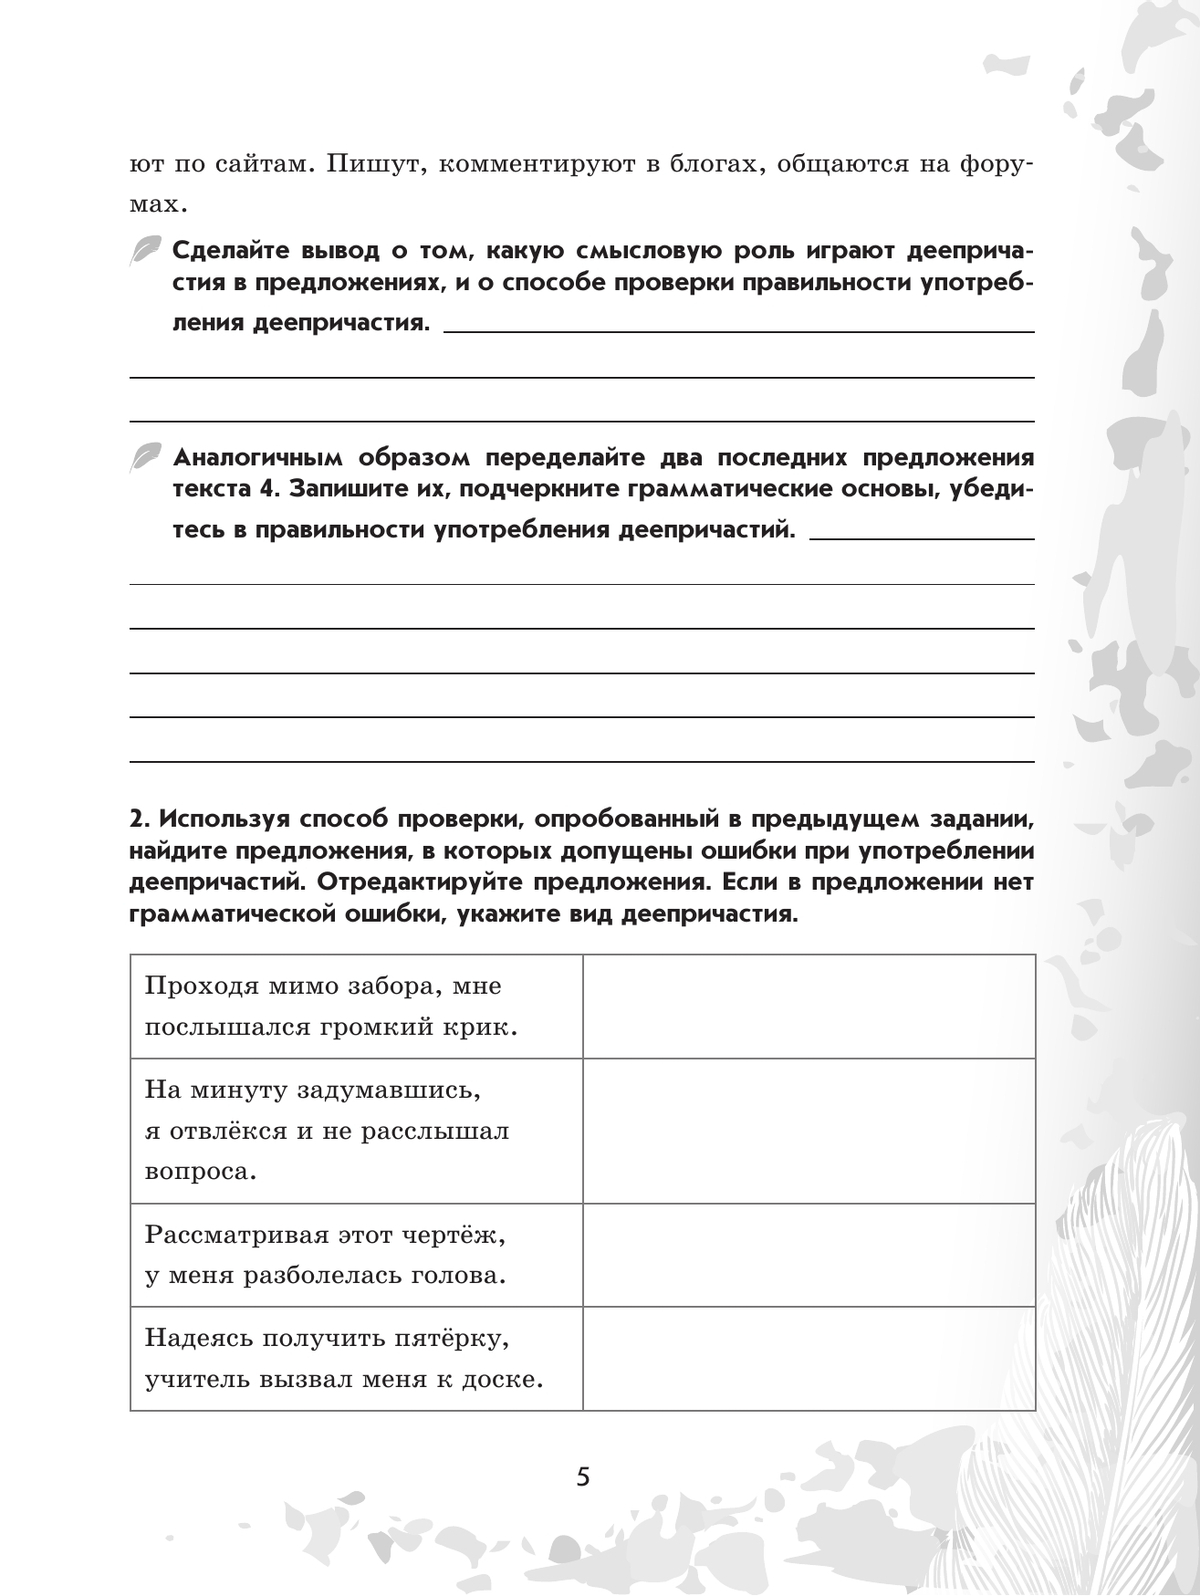 Русский язык. 7 класс. Рабочая тетрадь. Часть 2 6